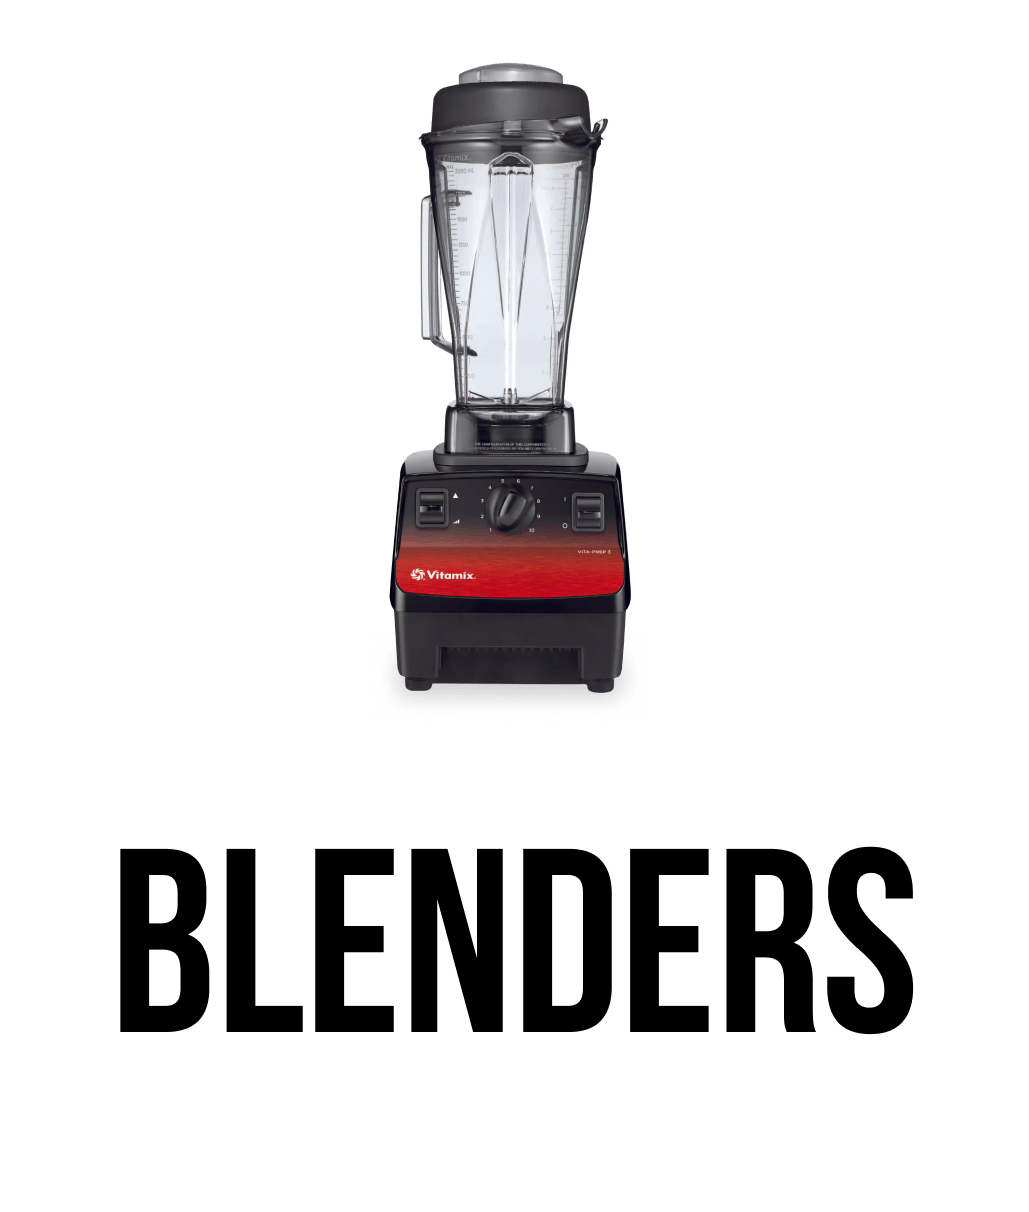 Blenders